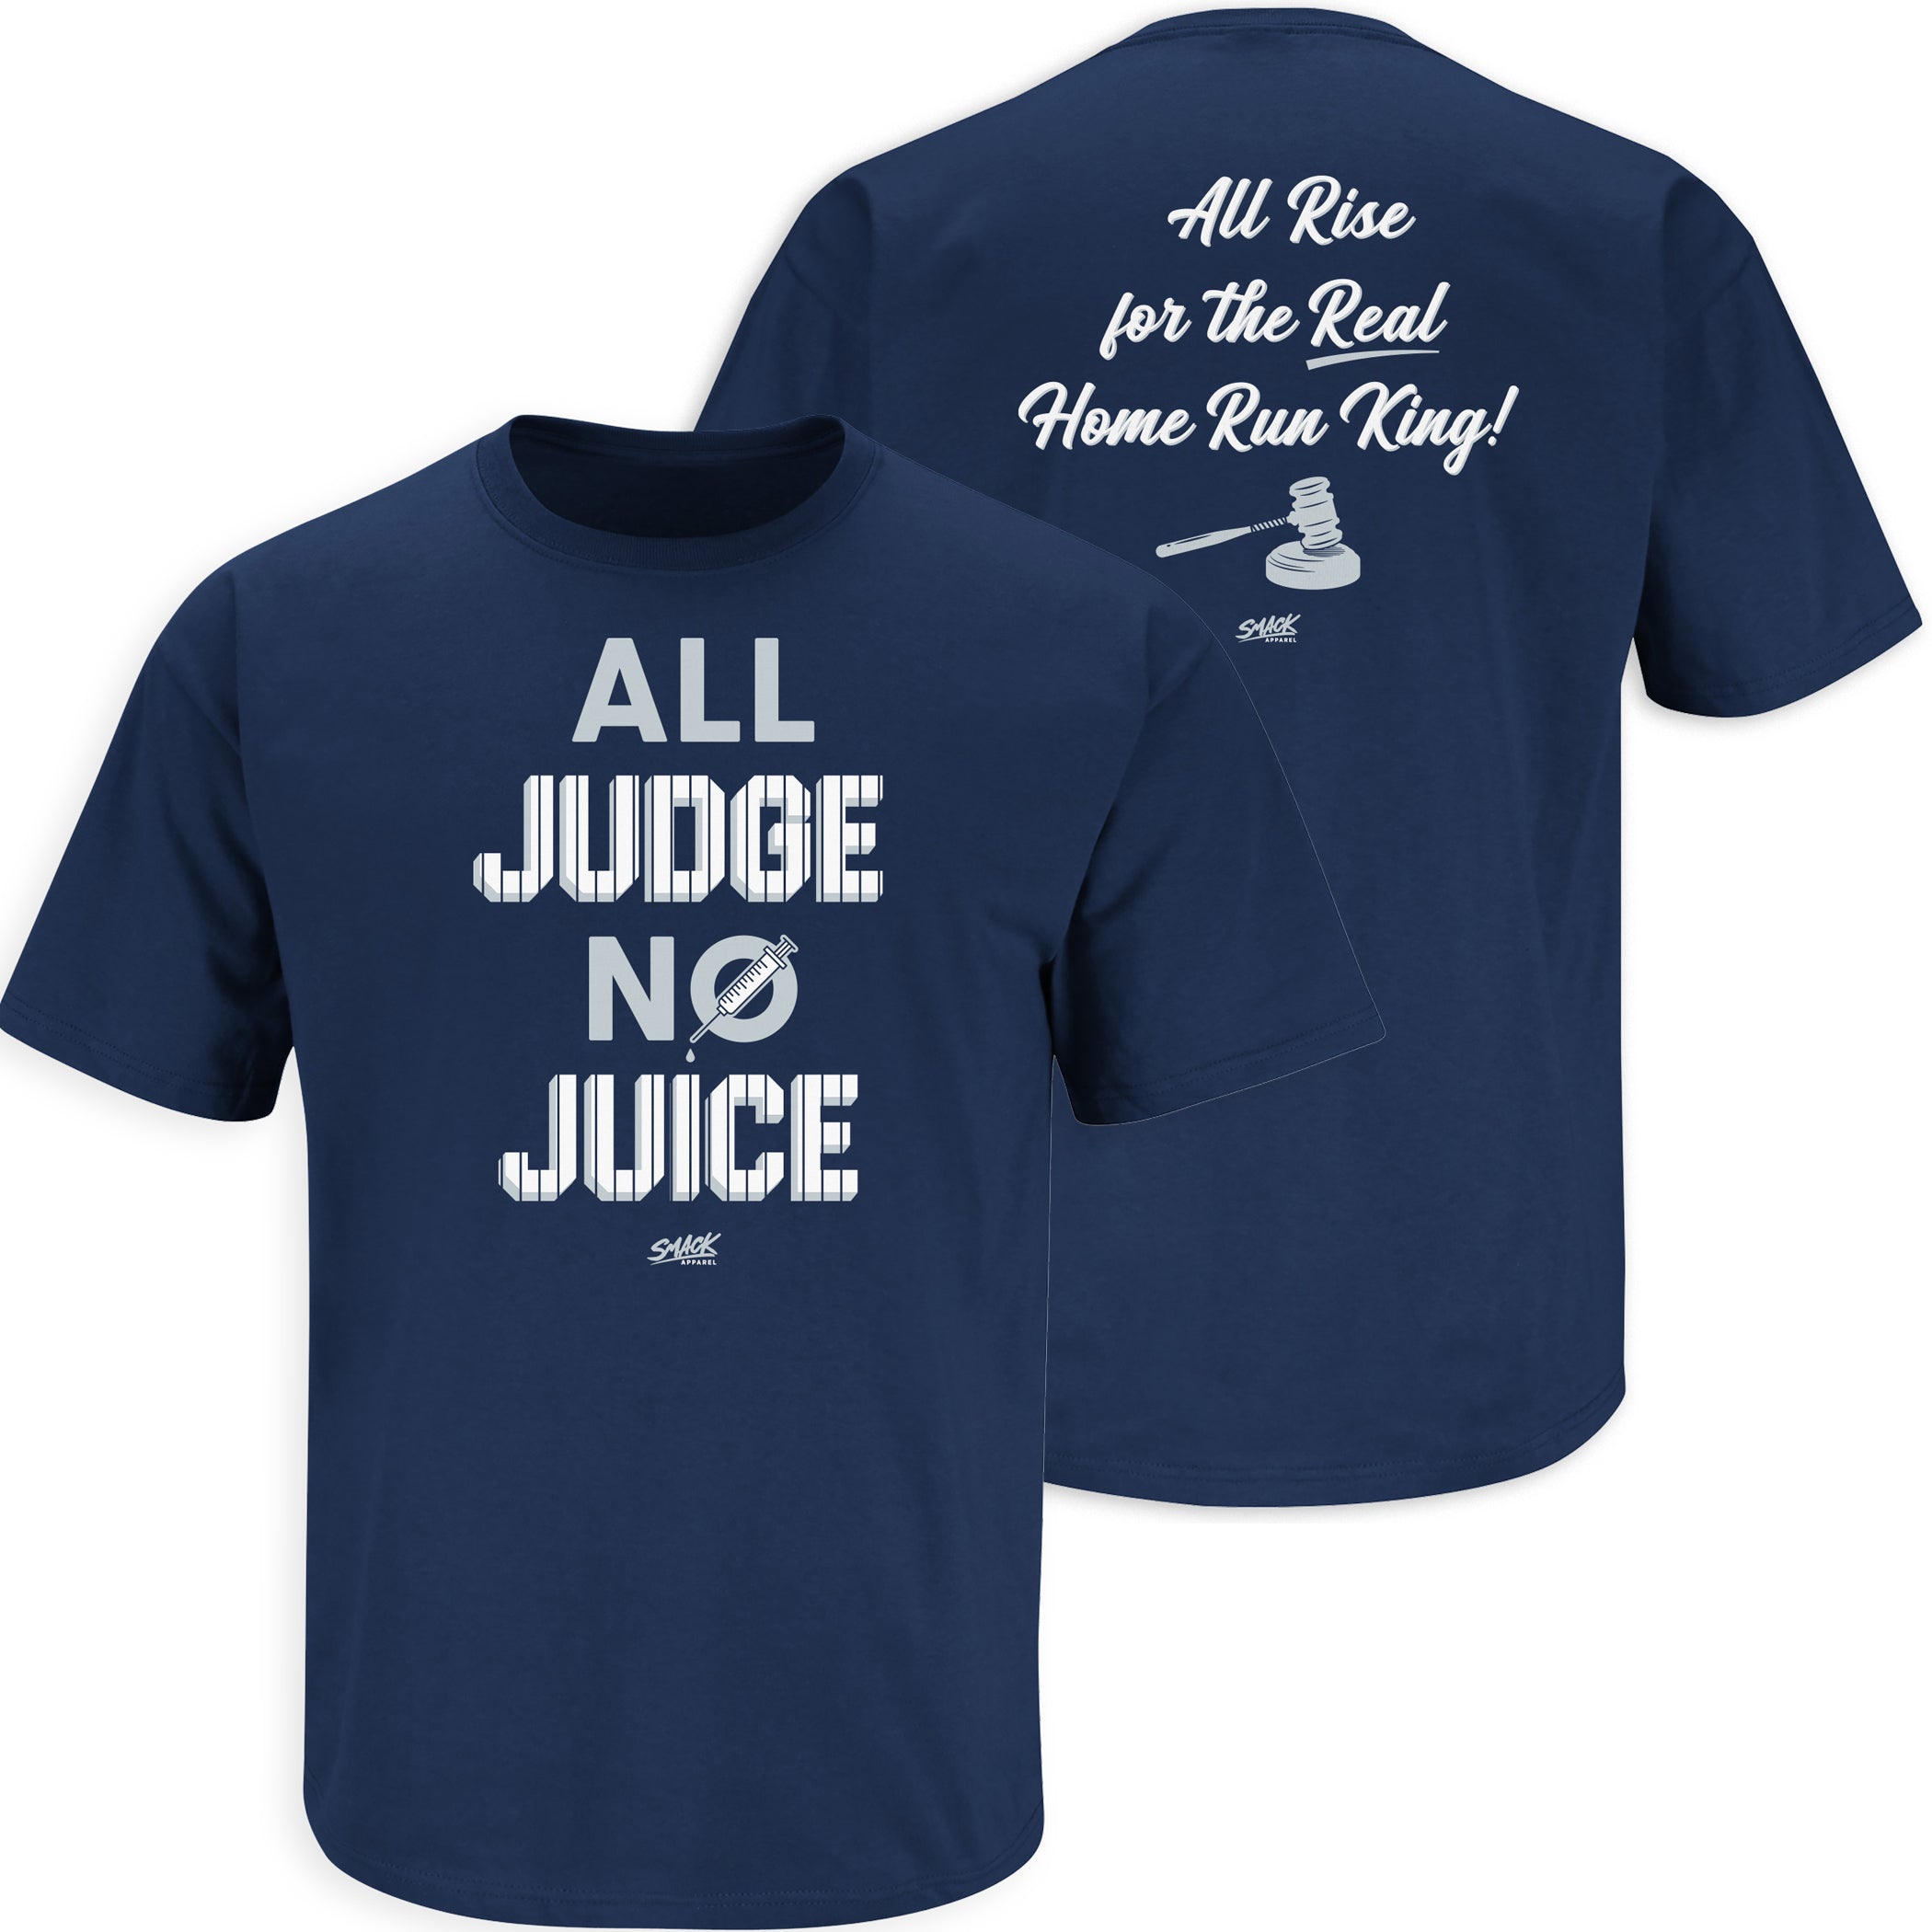 aaron judge home run tour shirt